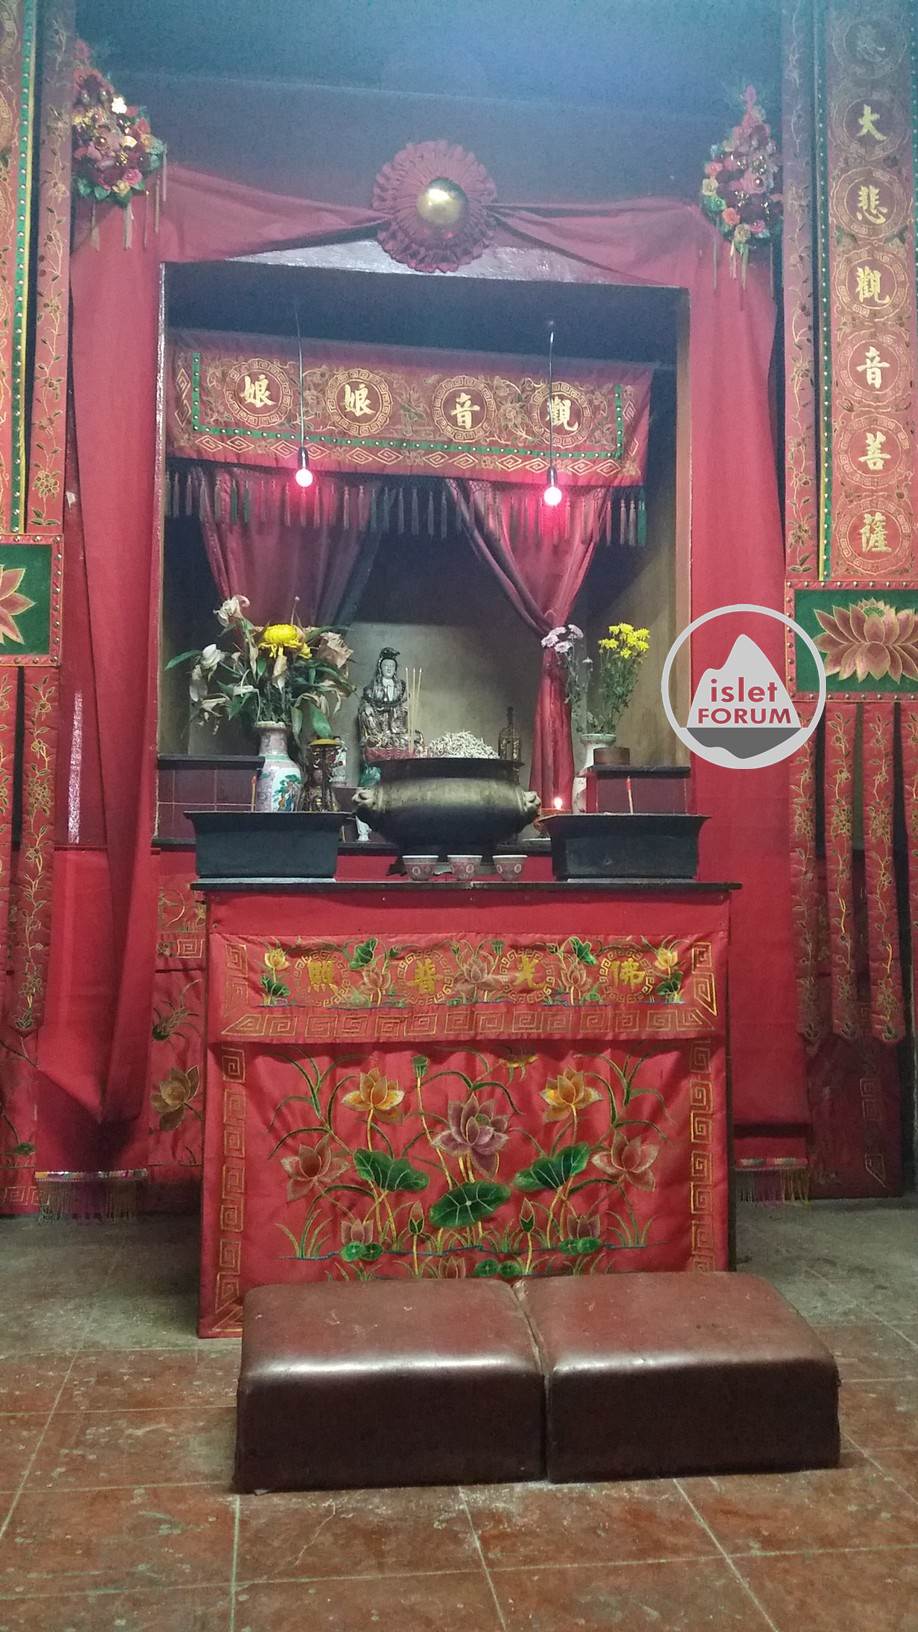 龍鼓灘天后廟lung kwu tan tin hau temple (11).jpg